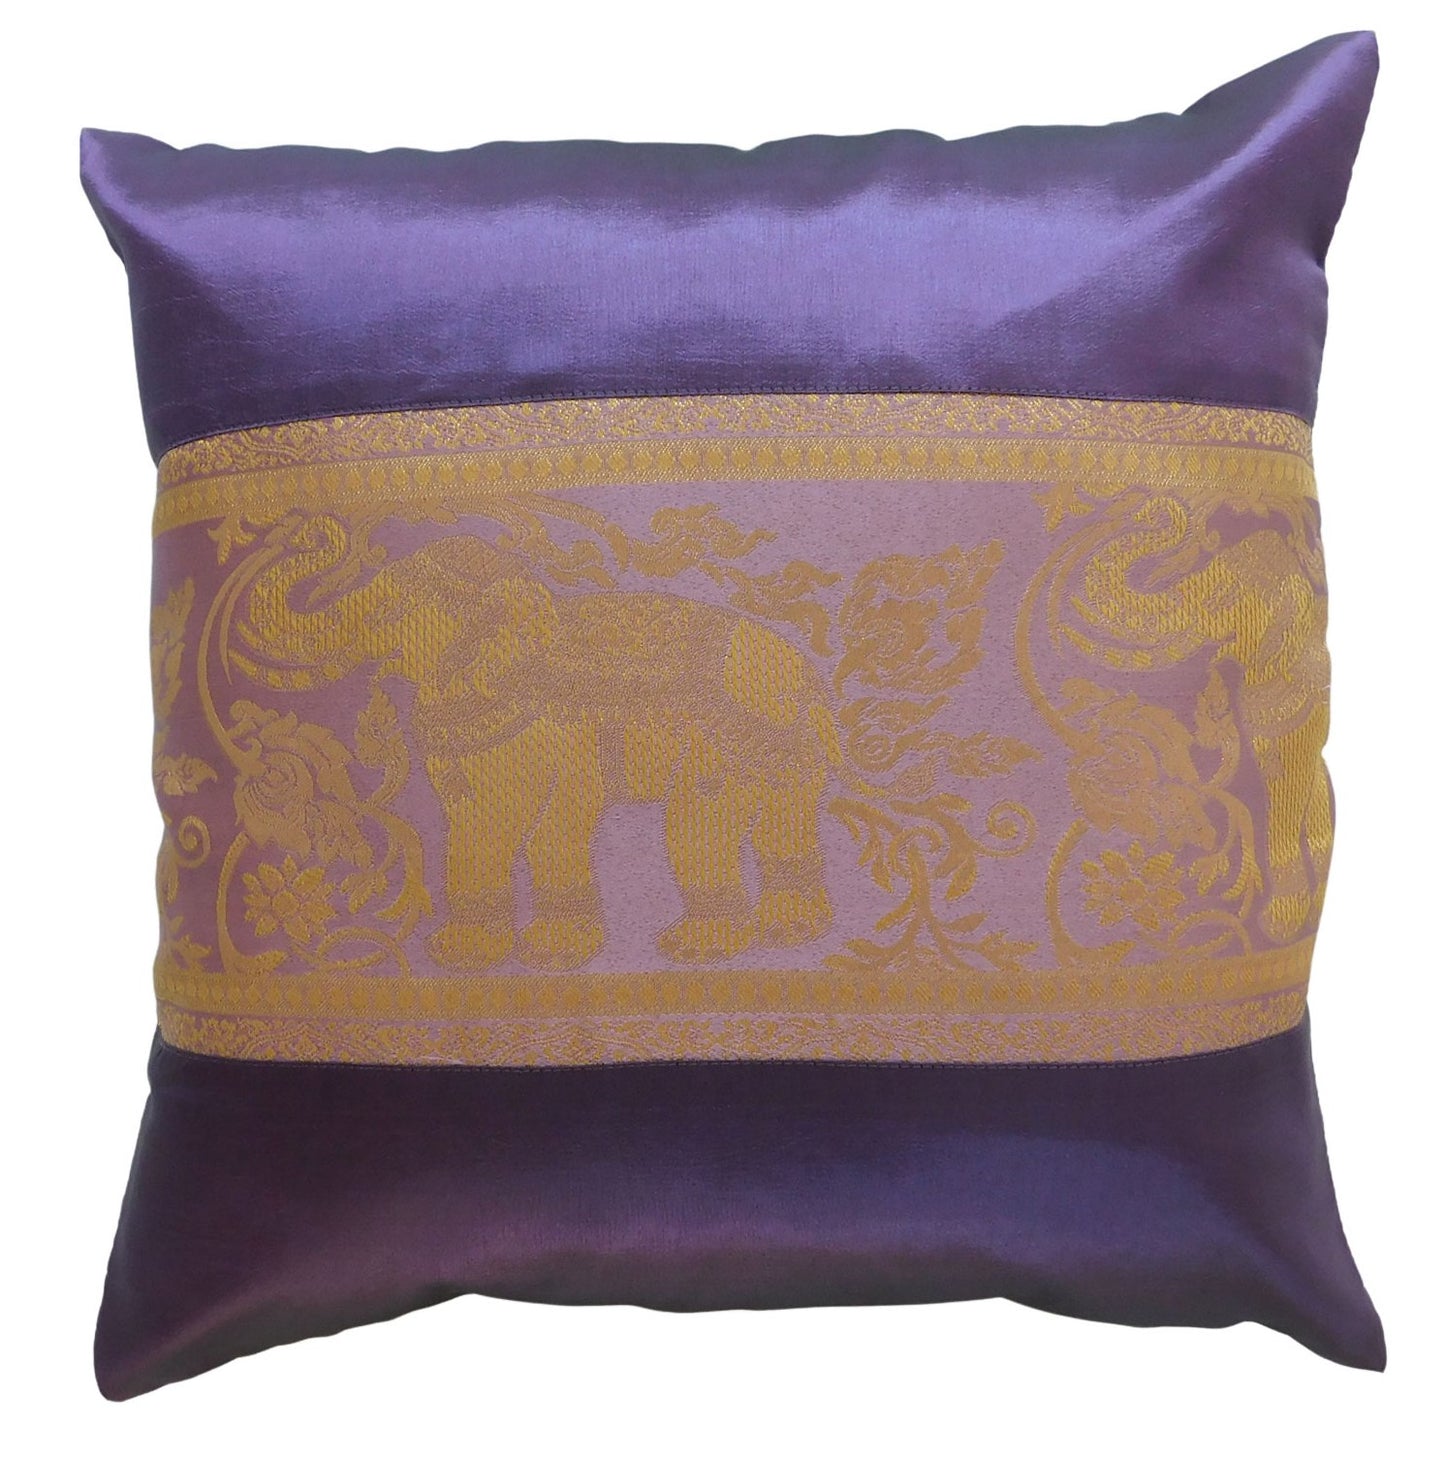 Housse de coussin motif éléphant uni 40x40cm/15.5x15.5in différentes couleurs canapé-lit en soie thaïlandaise chaise de jardin